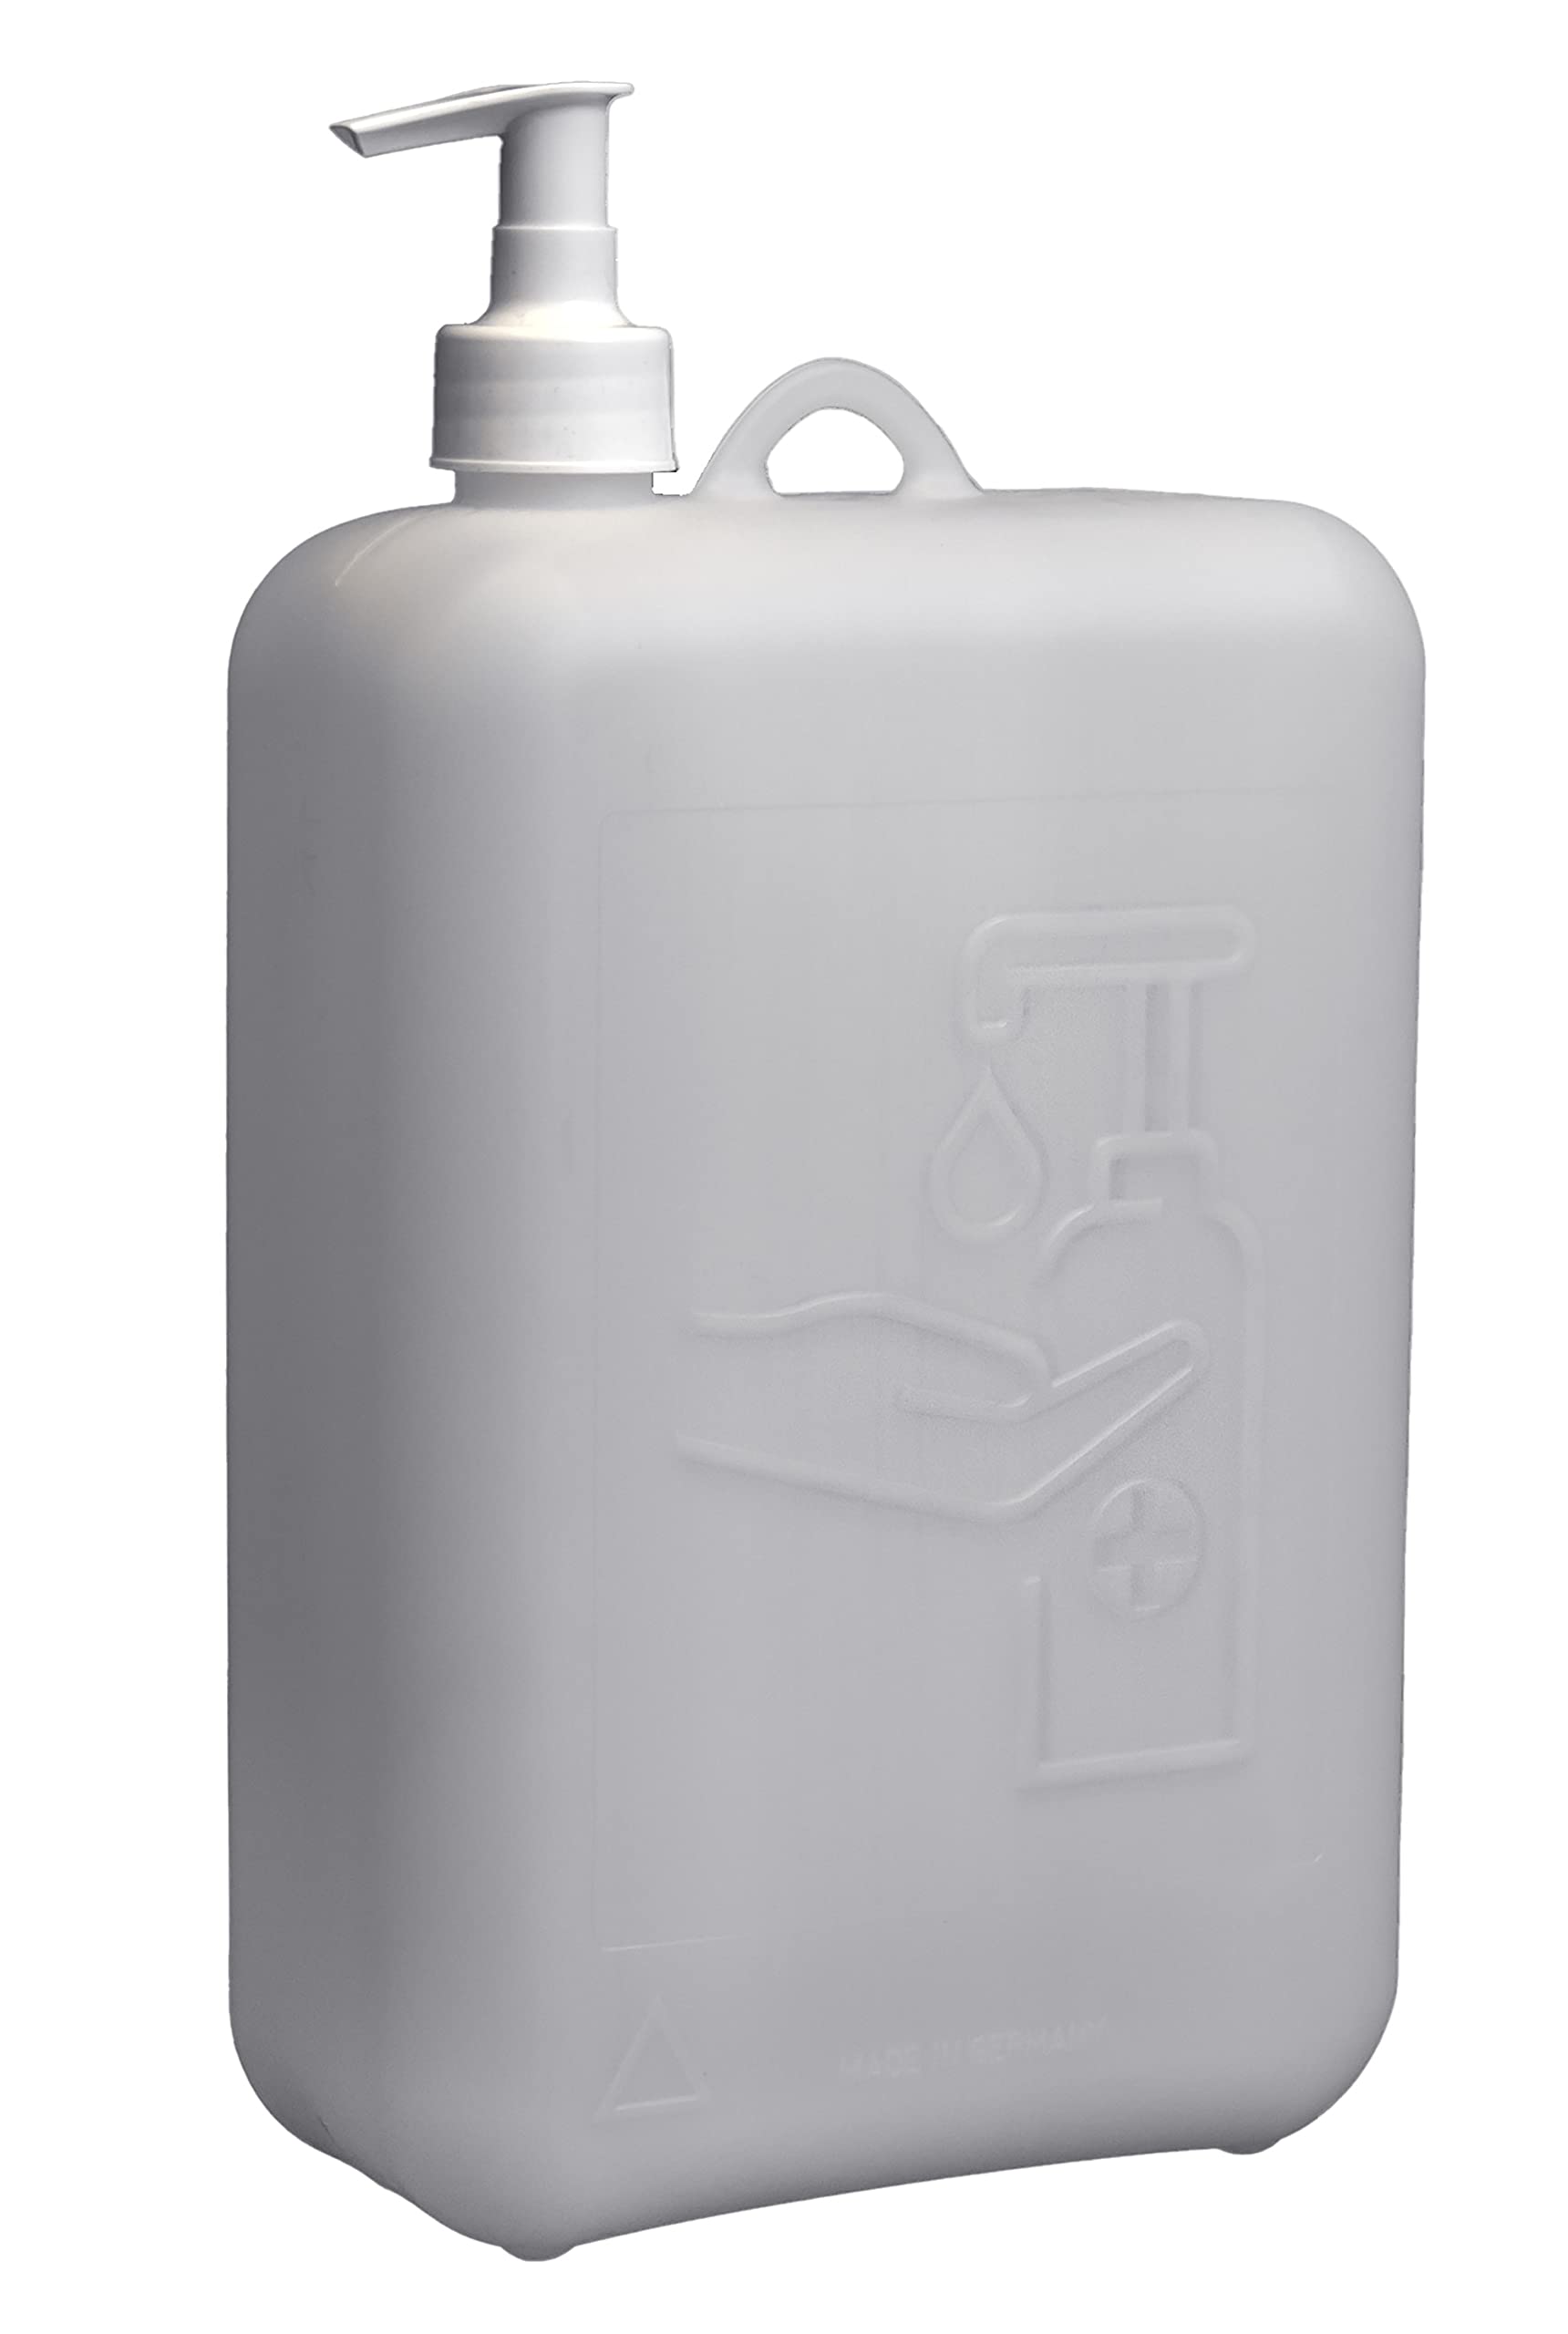 hünersdorff Pumpspender 2000ml ideal für Seife oder Desinfektionsmittel, BPA-frei, temperaturbeständig, naturfarben, 810260 von hünersdorff